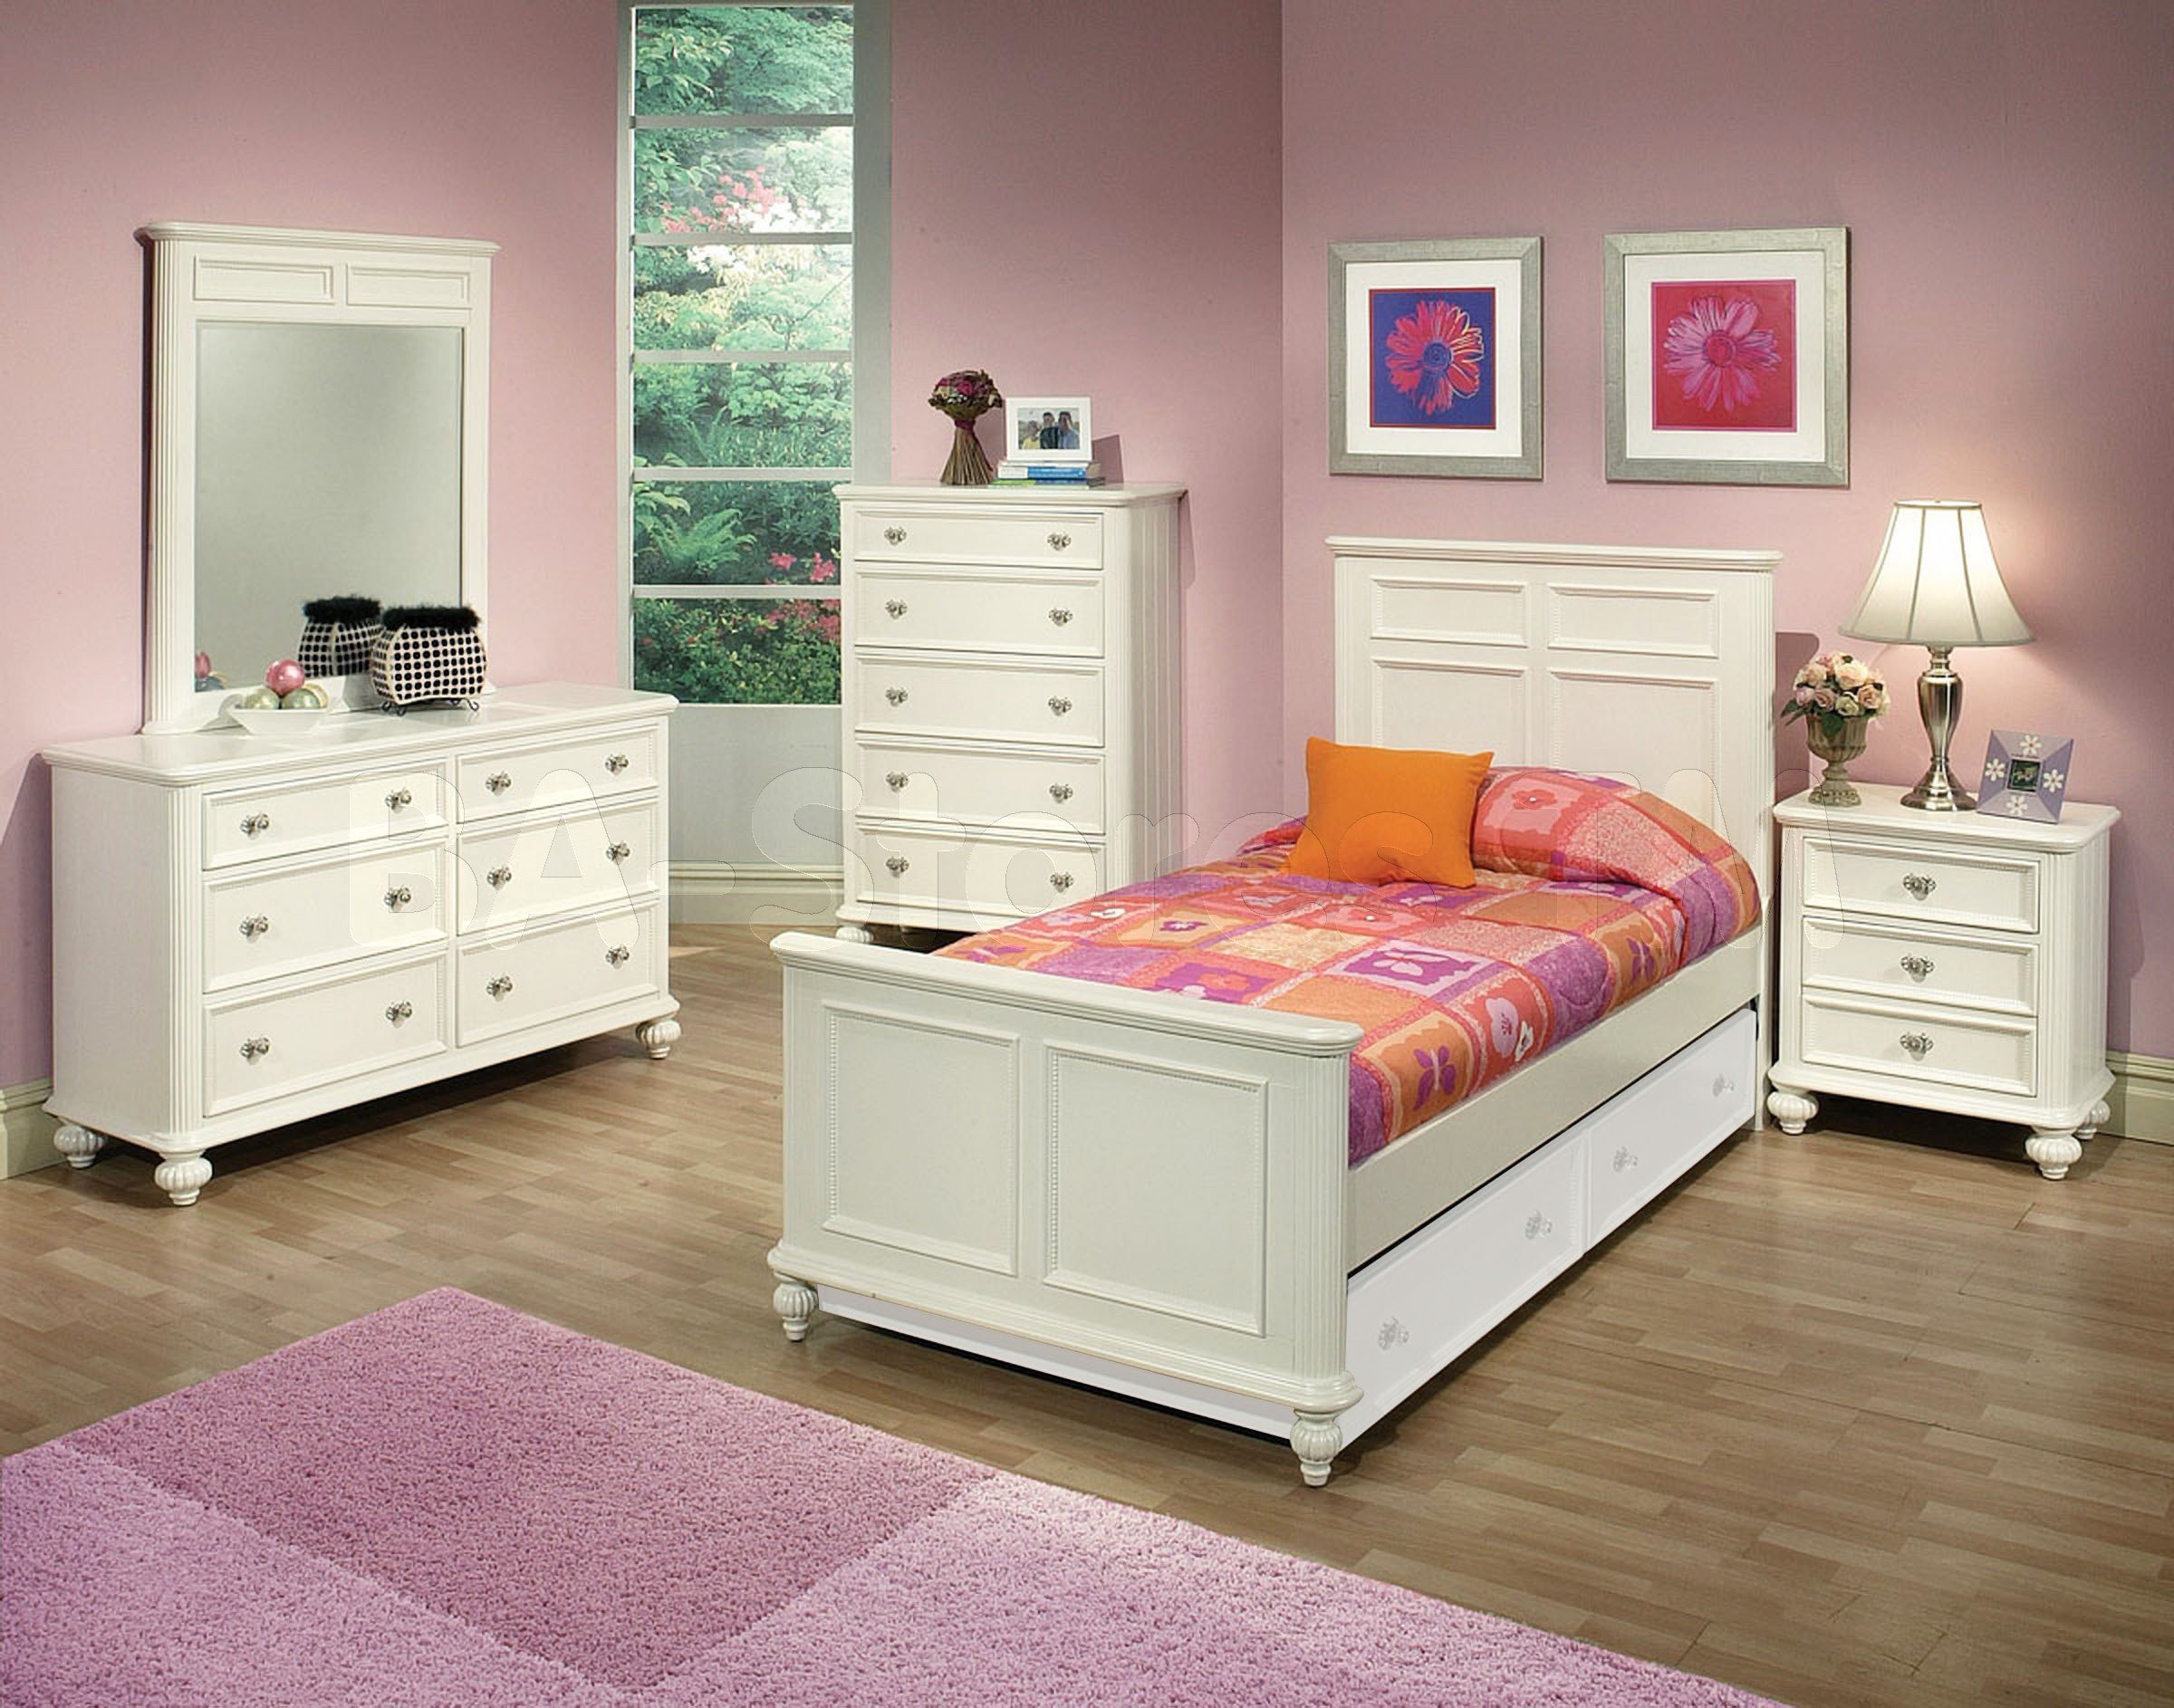 Kids Bedroom Furniture
 Solid wood bedroom furniture for kids 20 tips for best